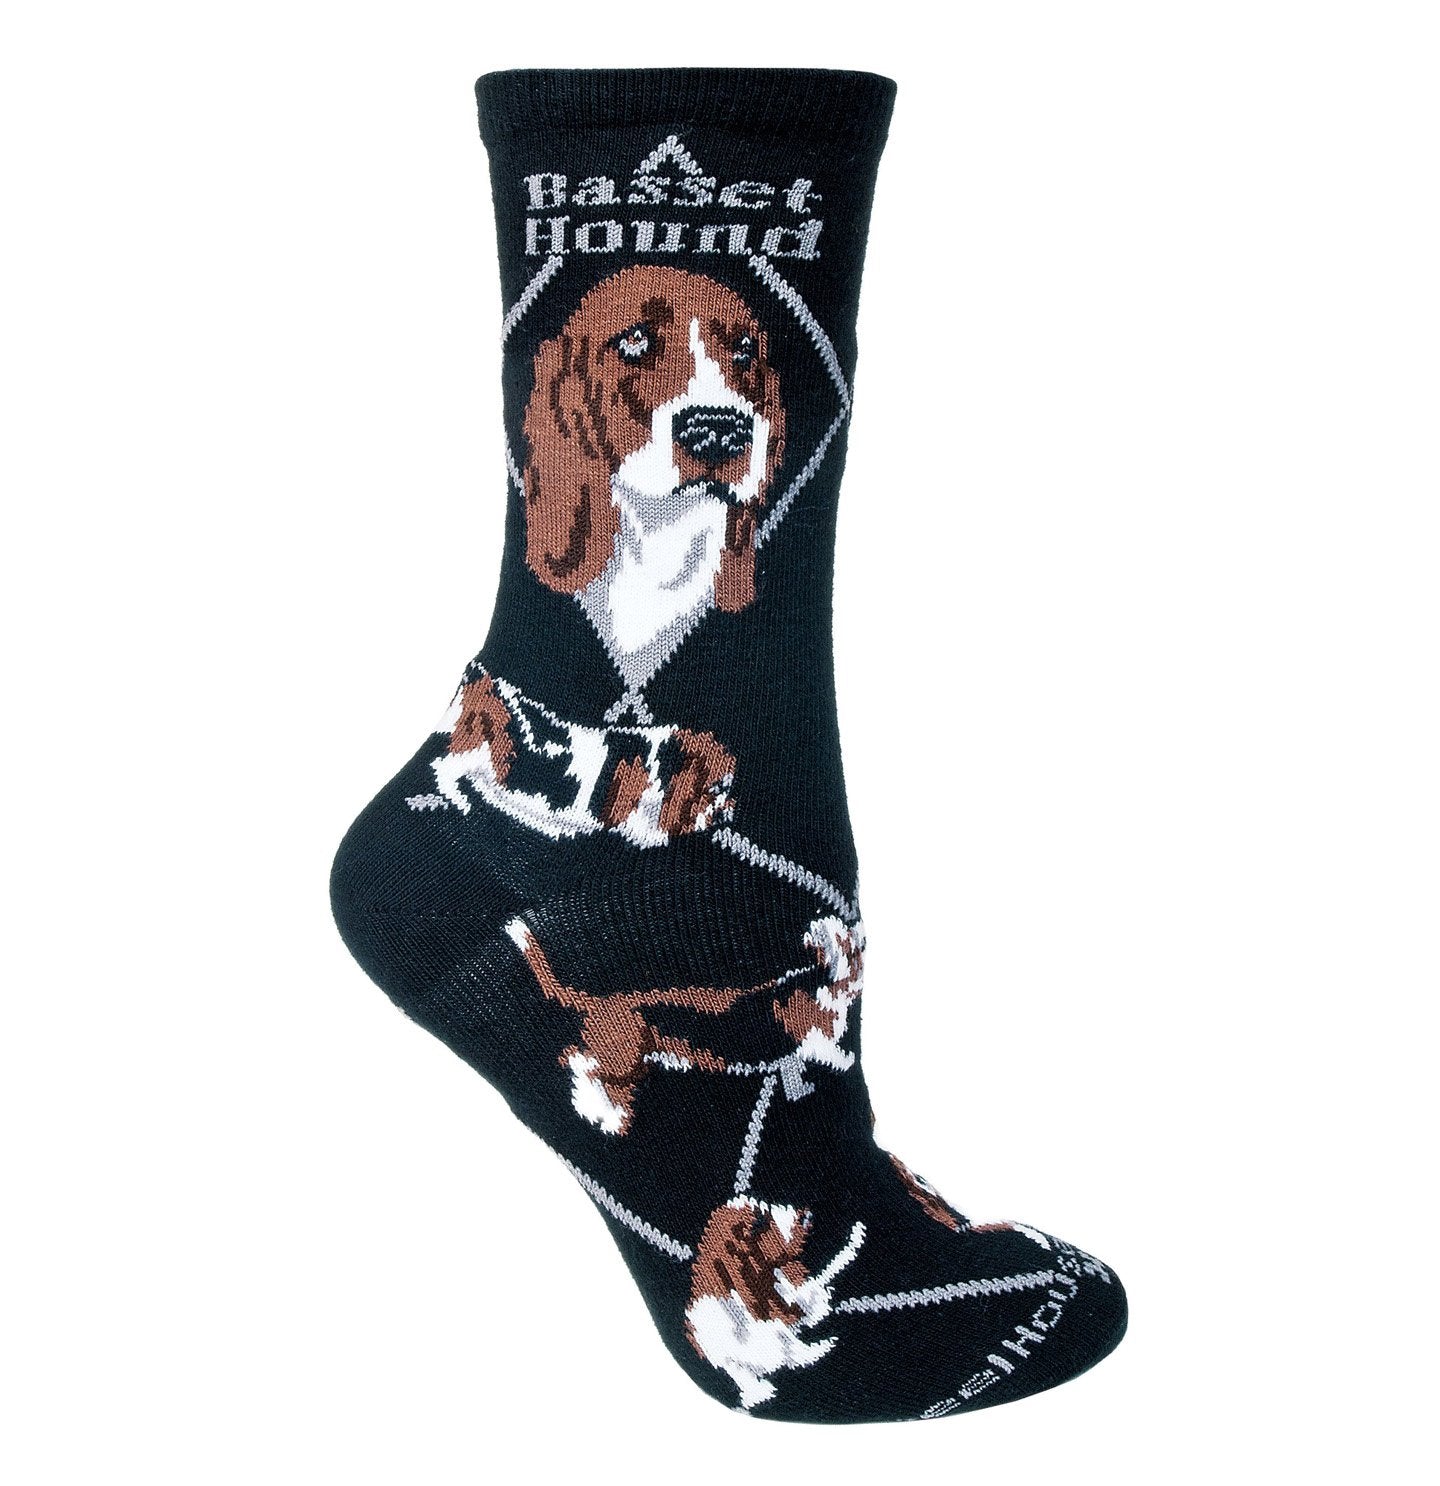 Animal Pride - Basset Hound on Black - Adult Cotton Crew Socks